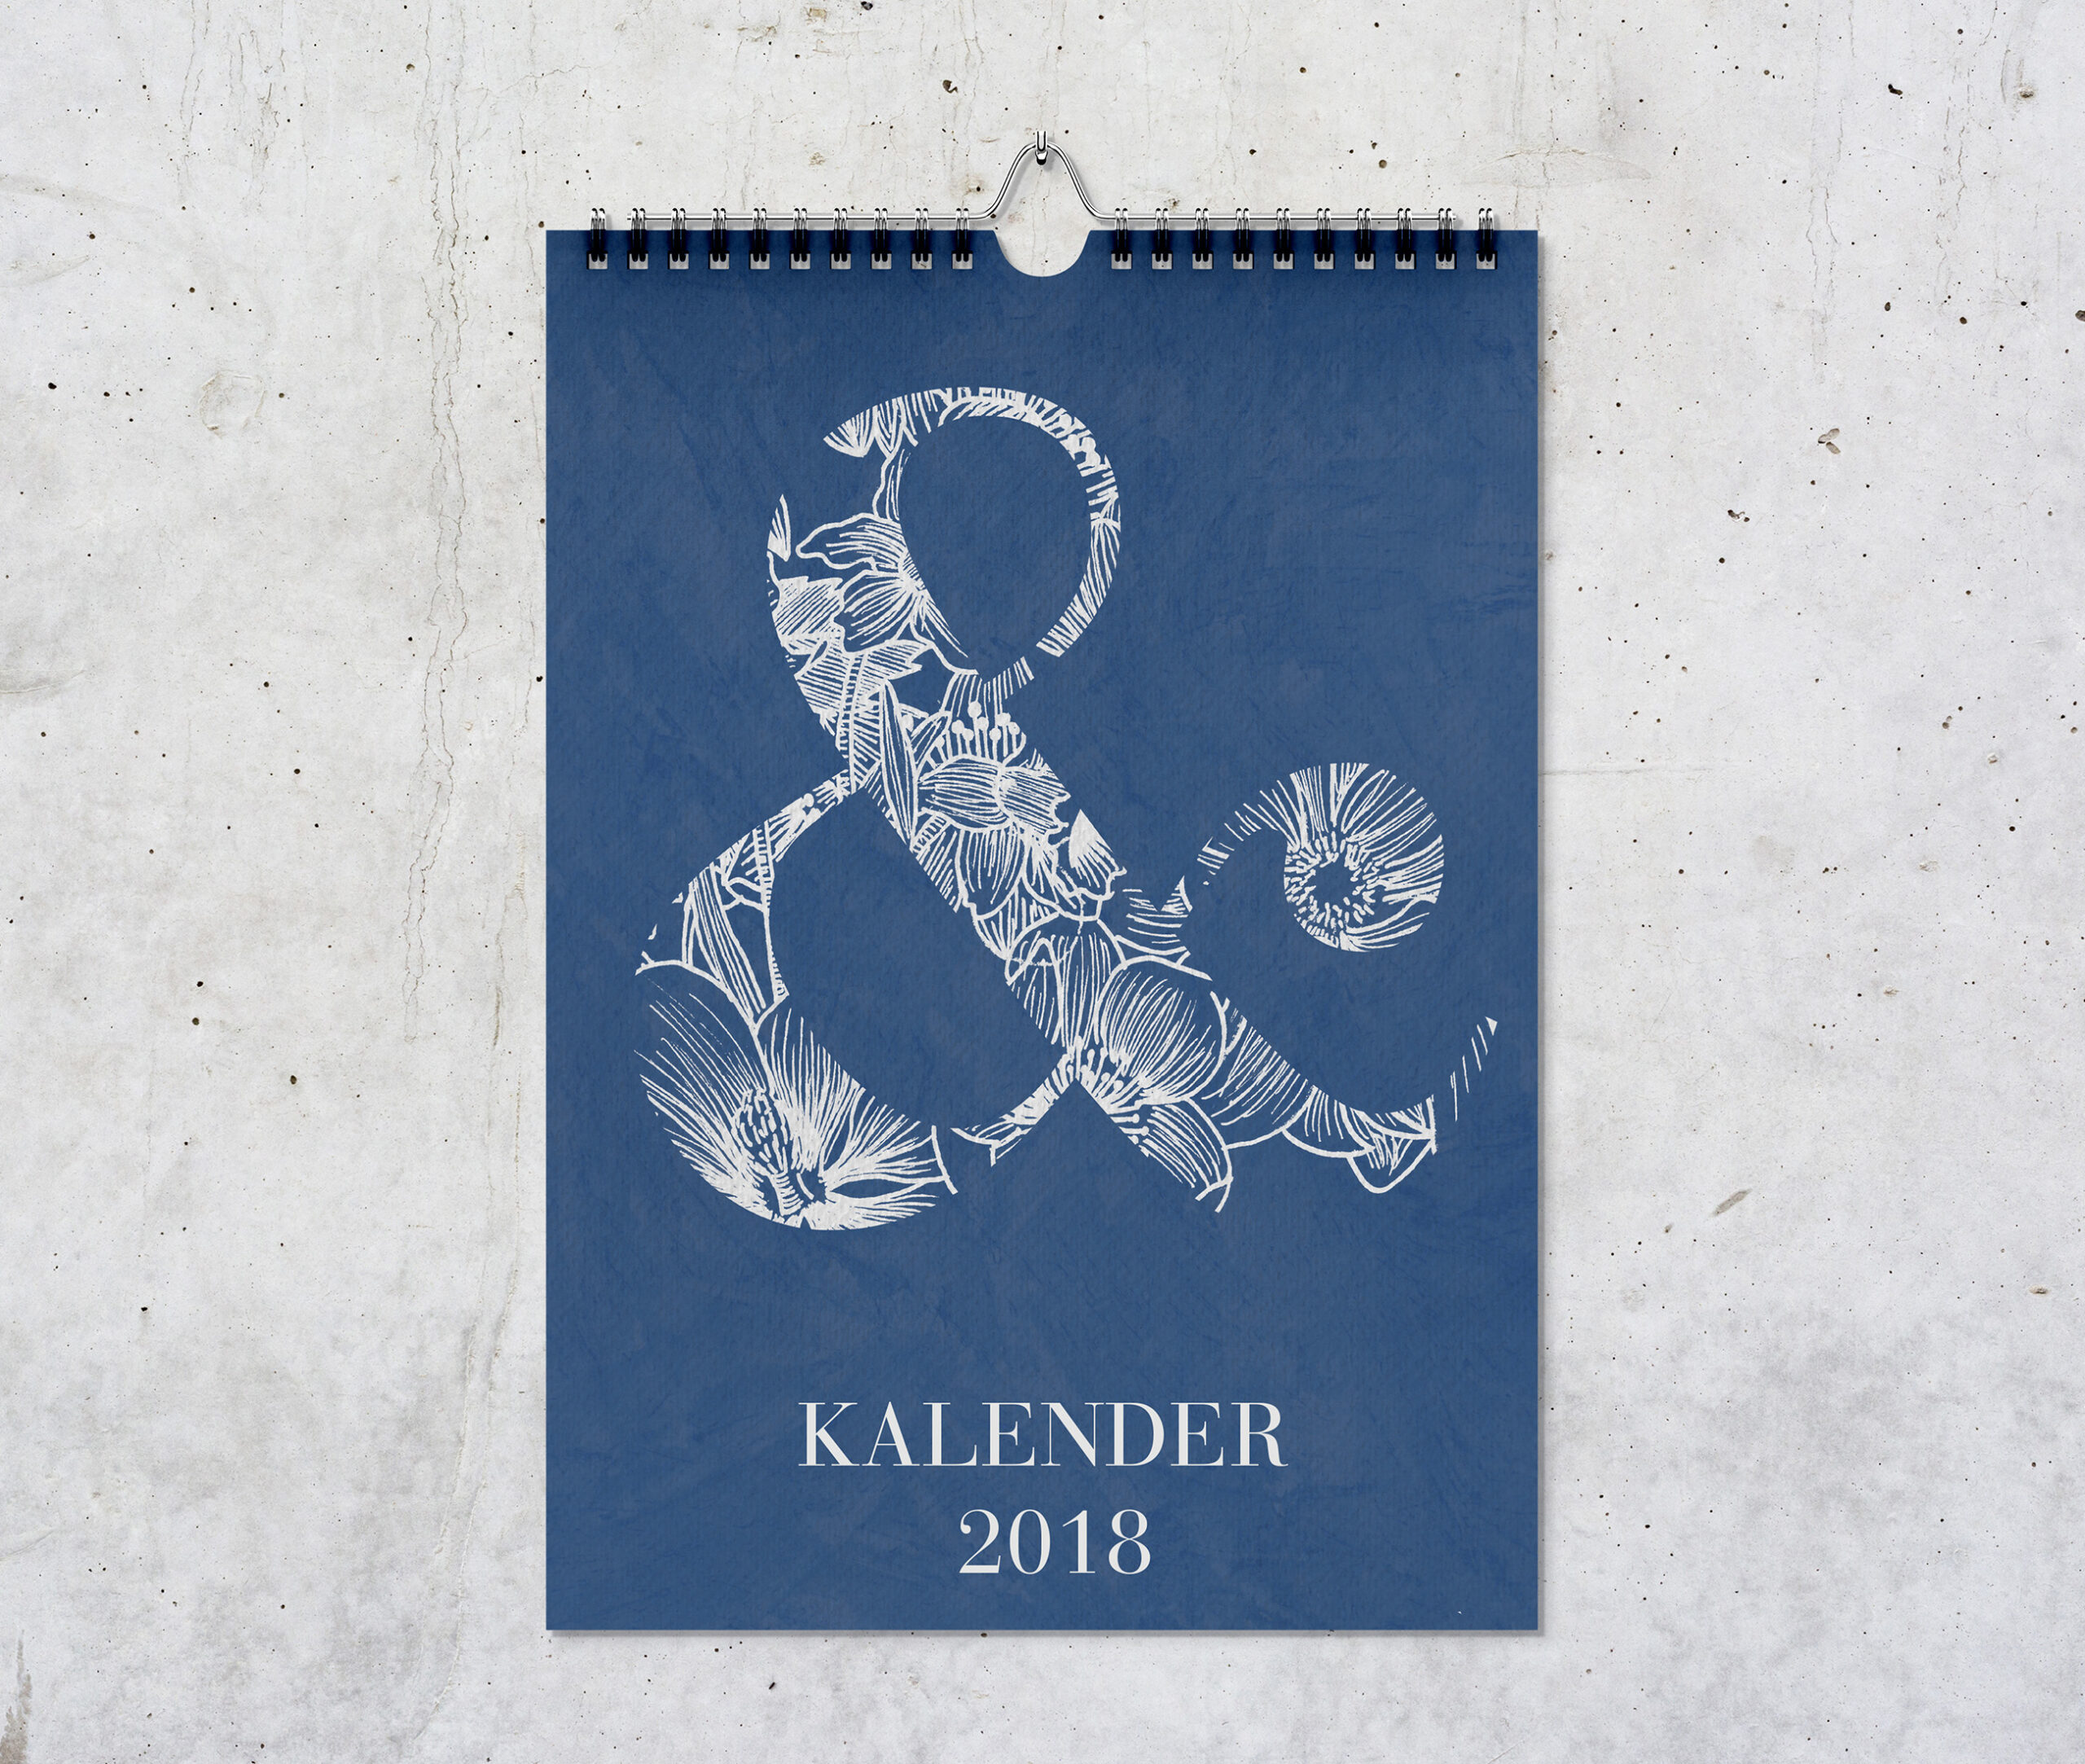 Kalender Titeblatt, mit einem großen Ampersand gefüllt mit Zeichnungen von Blumen in weiß vor blauem Hintergrund.